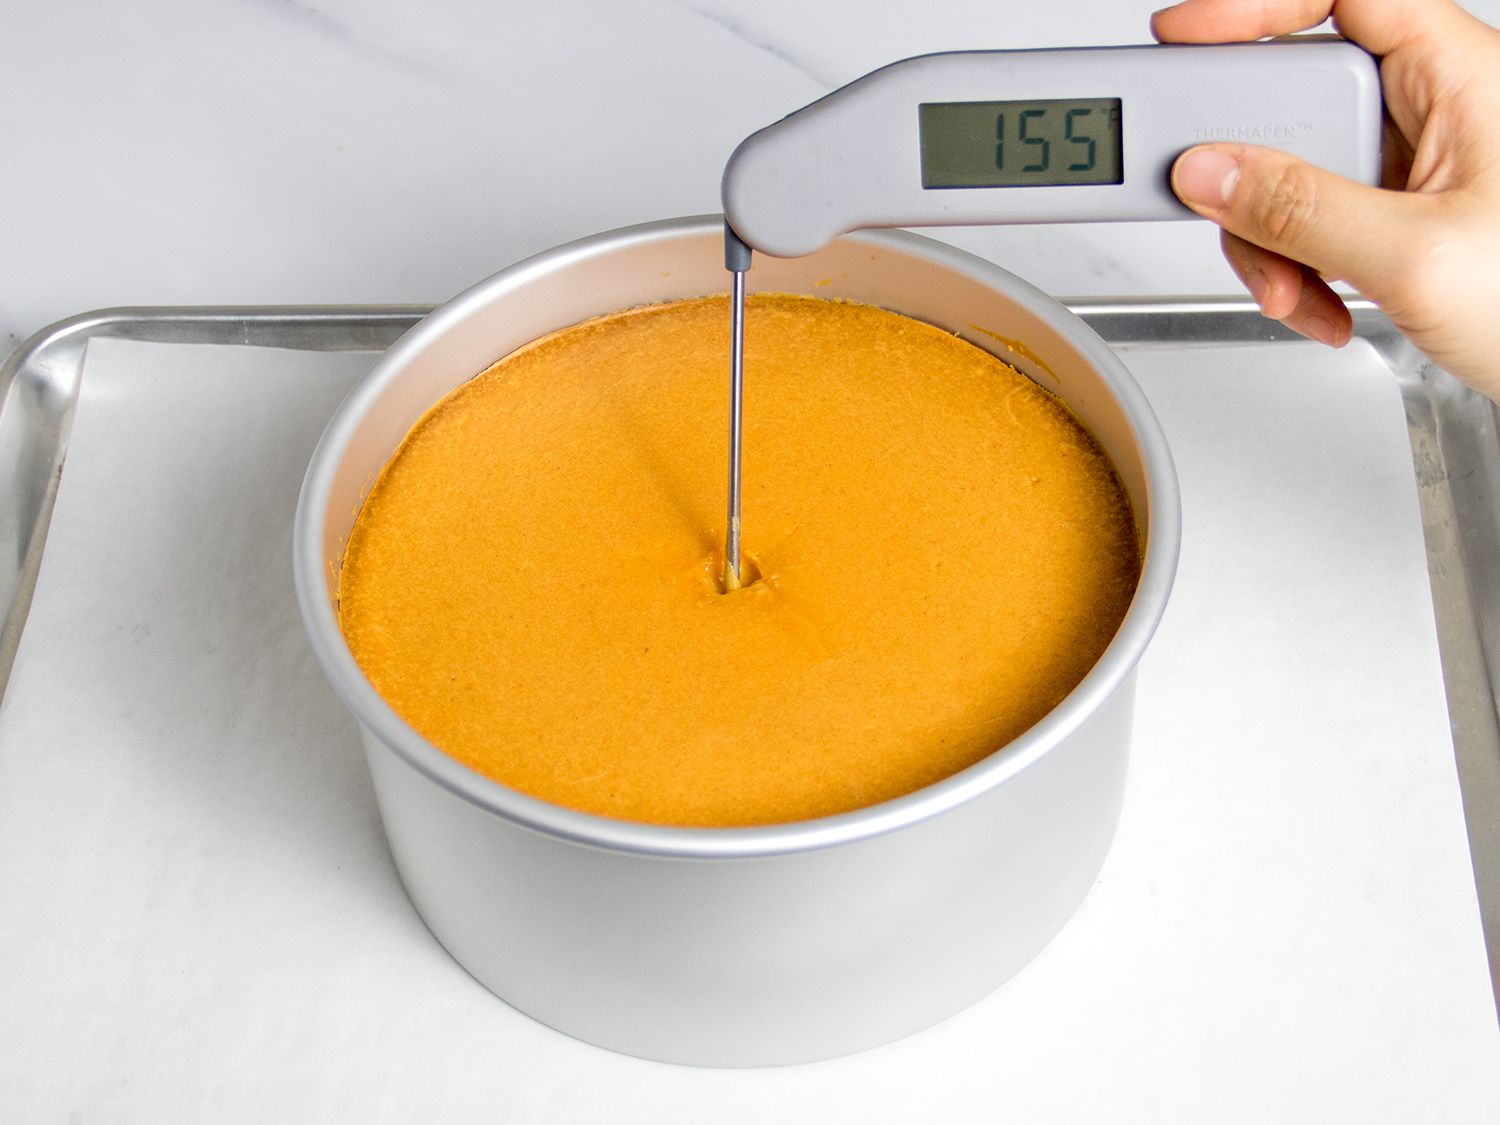 温度计插入烤奶酪蛋糕的中心显示温度为155华氏度。